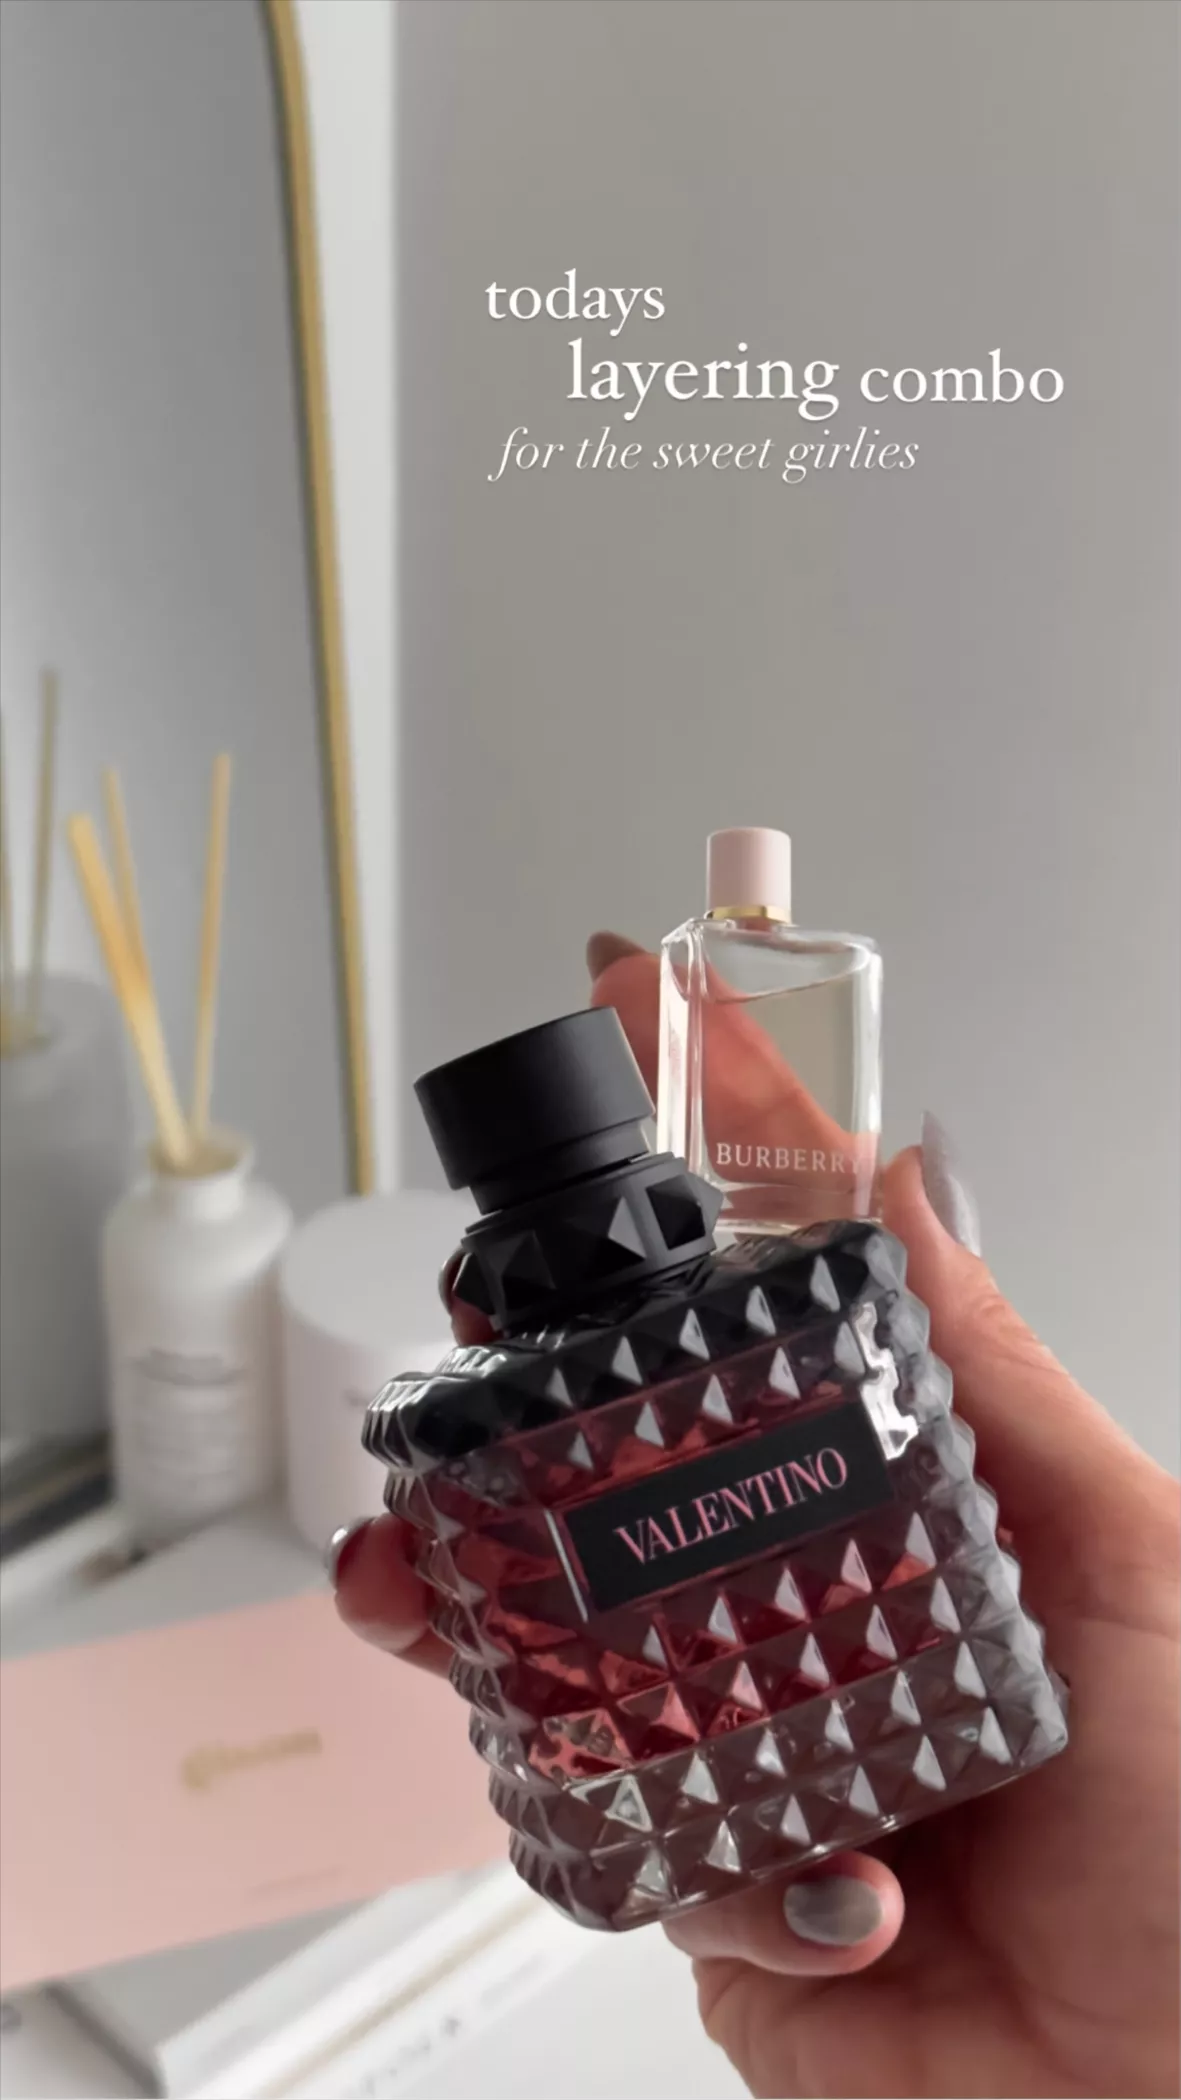 Size: 1.6 oz/ 50 mL eau de parfum … curated on LTK